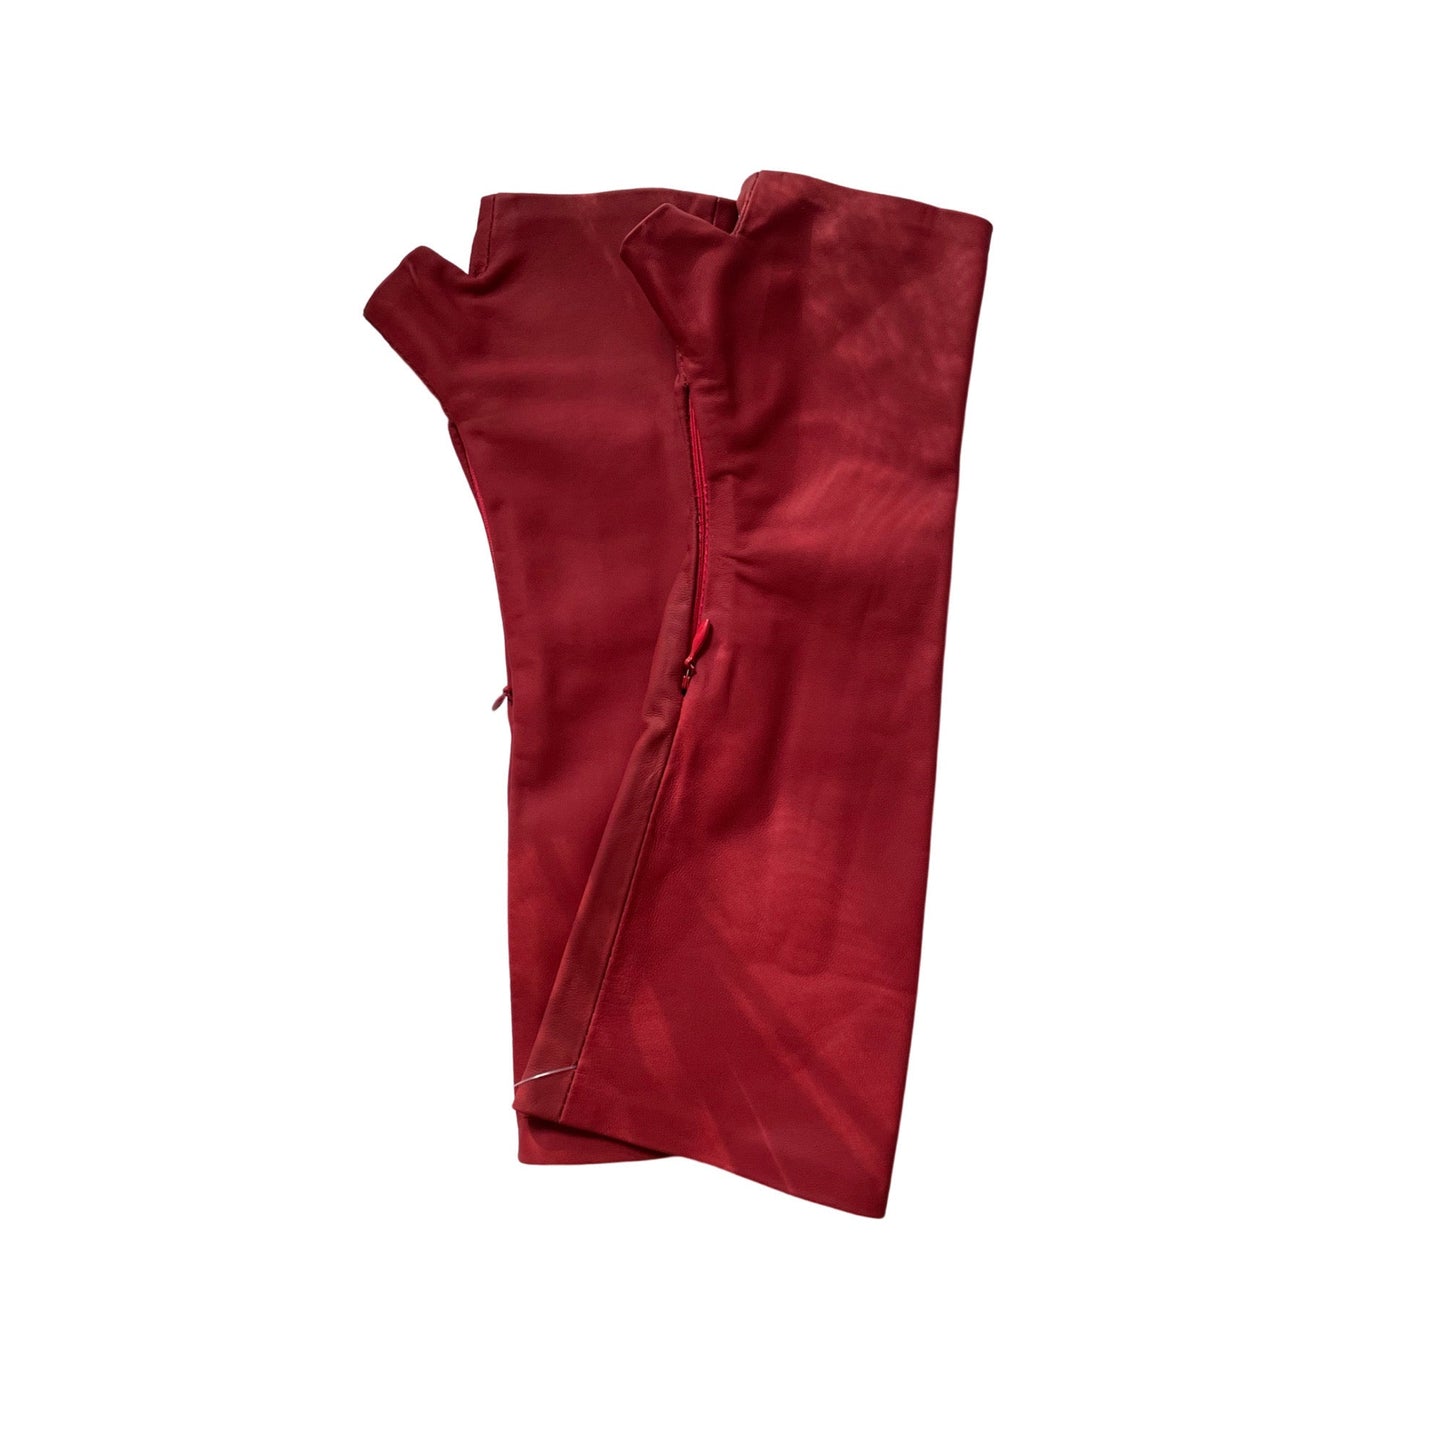 Matte Red Gloves Handmade Accessories